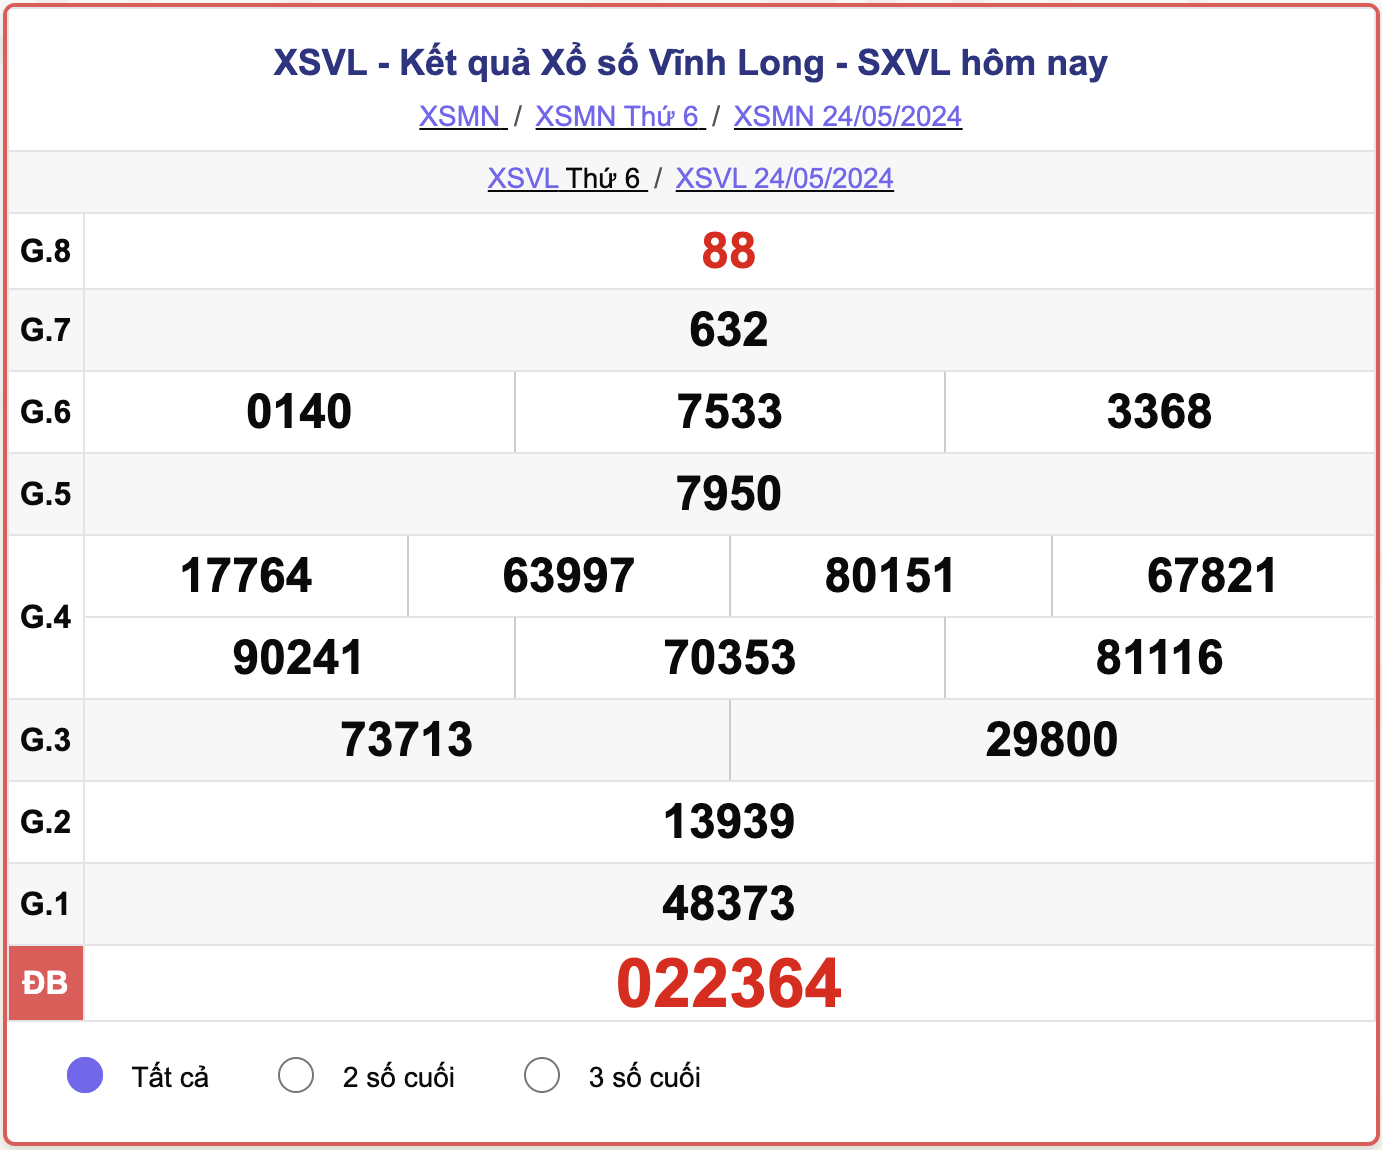 XSVL 24/5, kết quả xổ số Vĩnh Long hôm nay 24/5/2024.